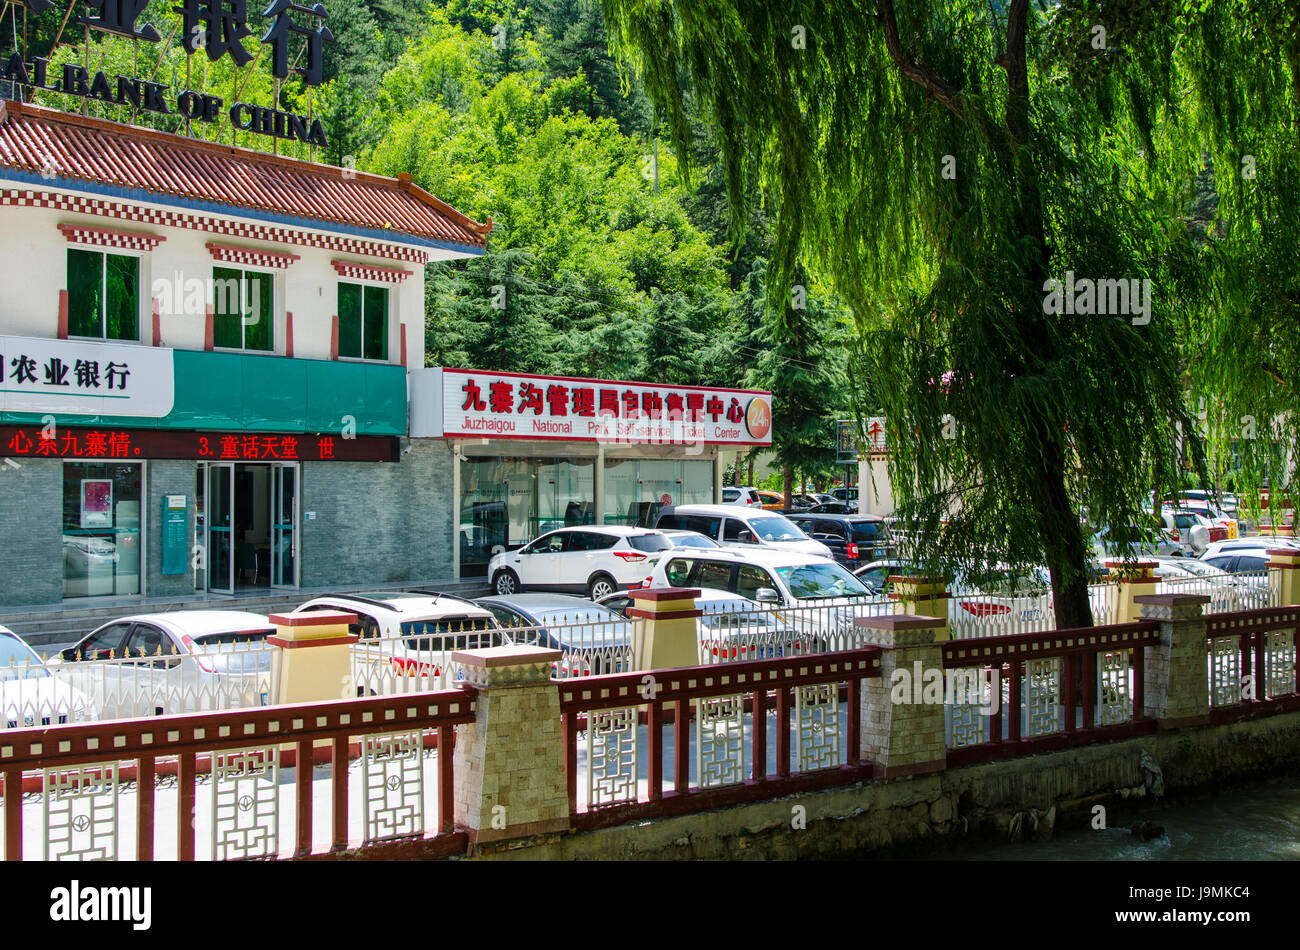 Una oficina de venta de billetes para la Nationalk Park se encuentra en la calle principal de Jiuzhaigou, Sichuan, China Foto de stock